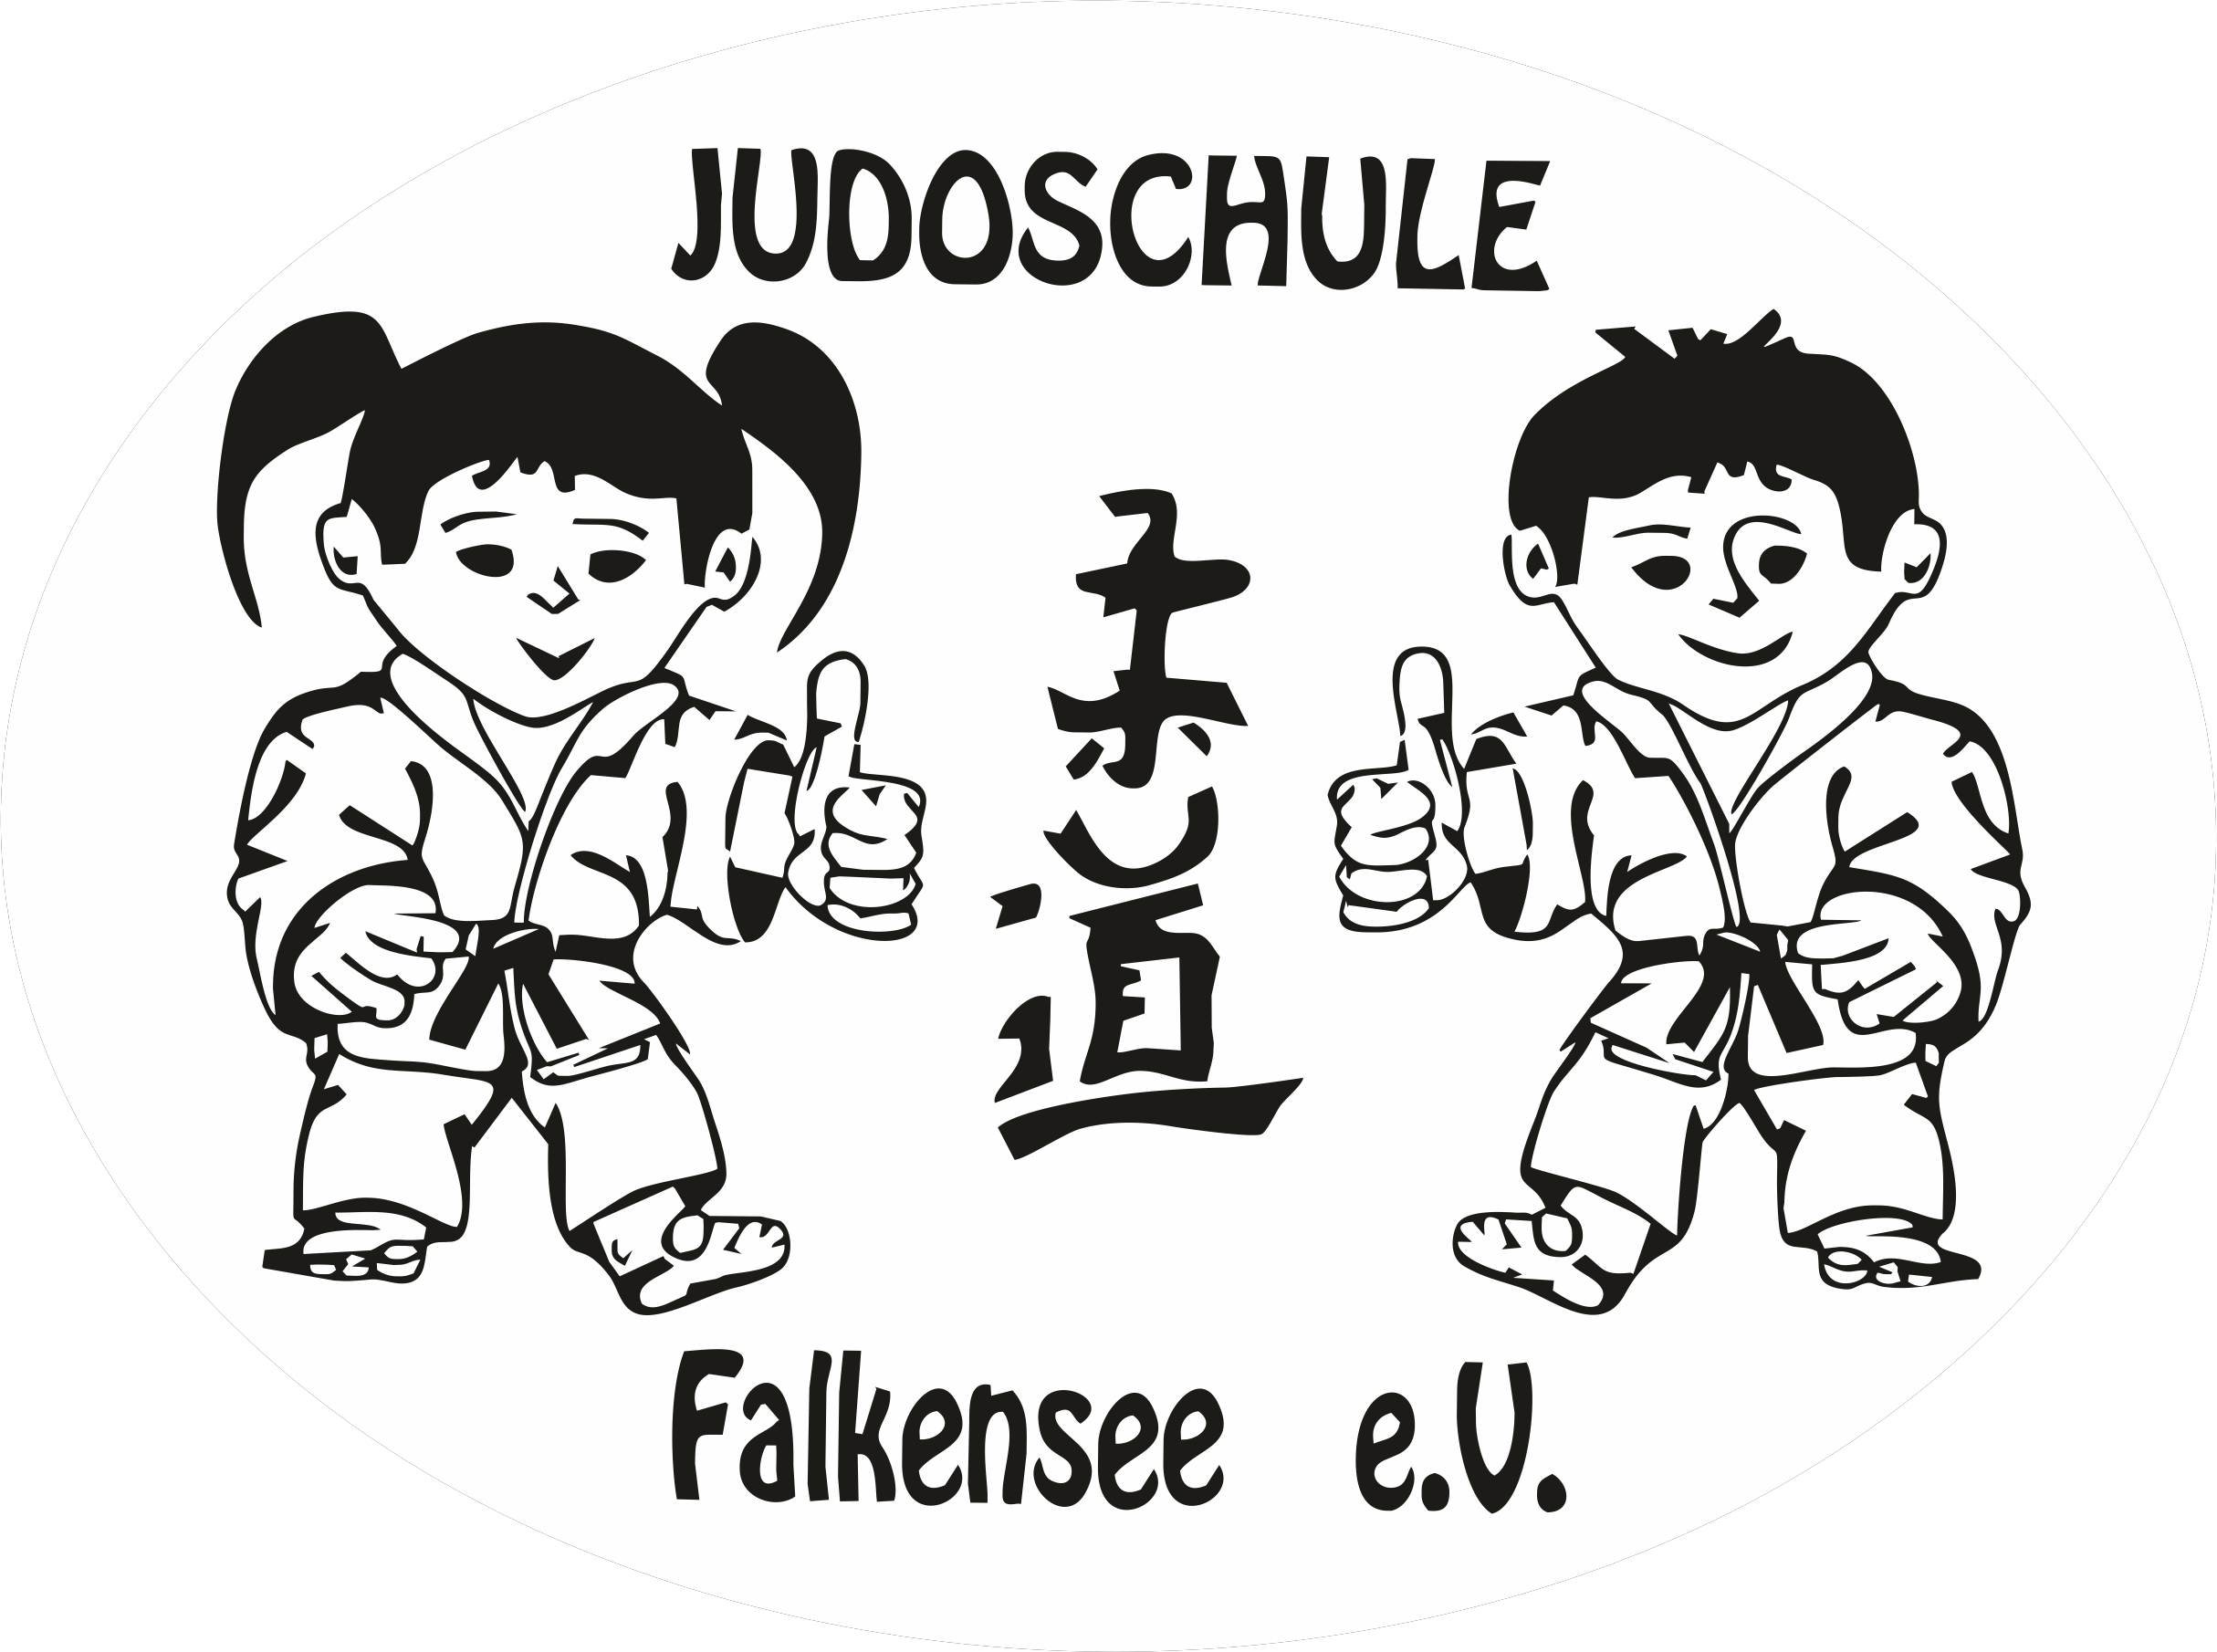 Judoschule Falkensee Logo